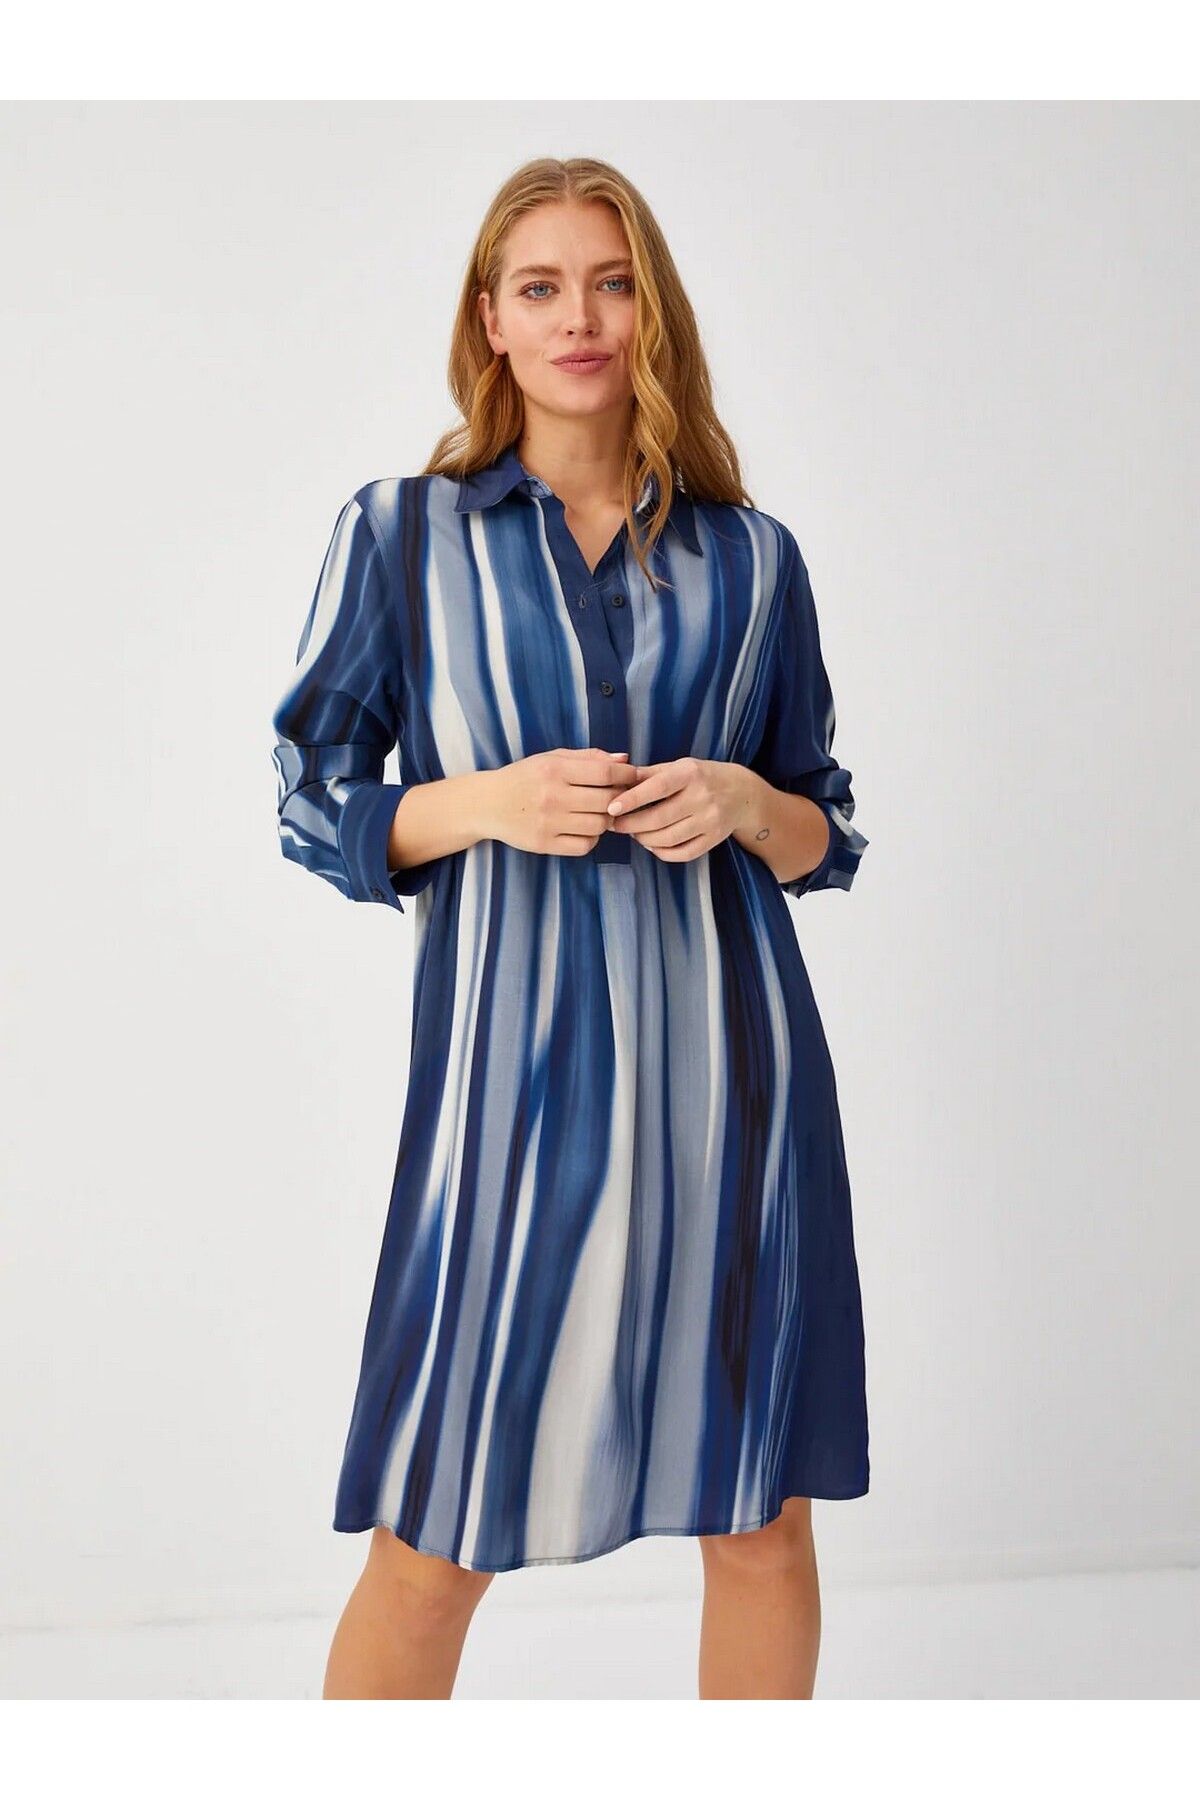 Faik Sönmez Gömlek Yaka Büyük Beden Desenli Uzun Kollu Lacivert Kadın Elbise U68298